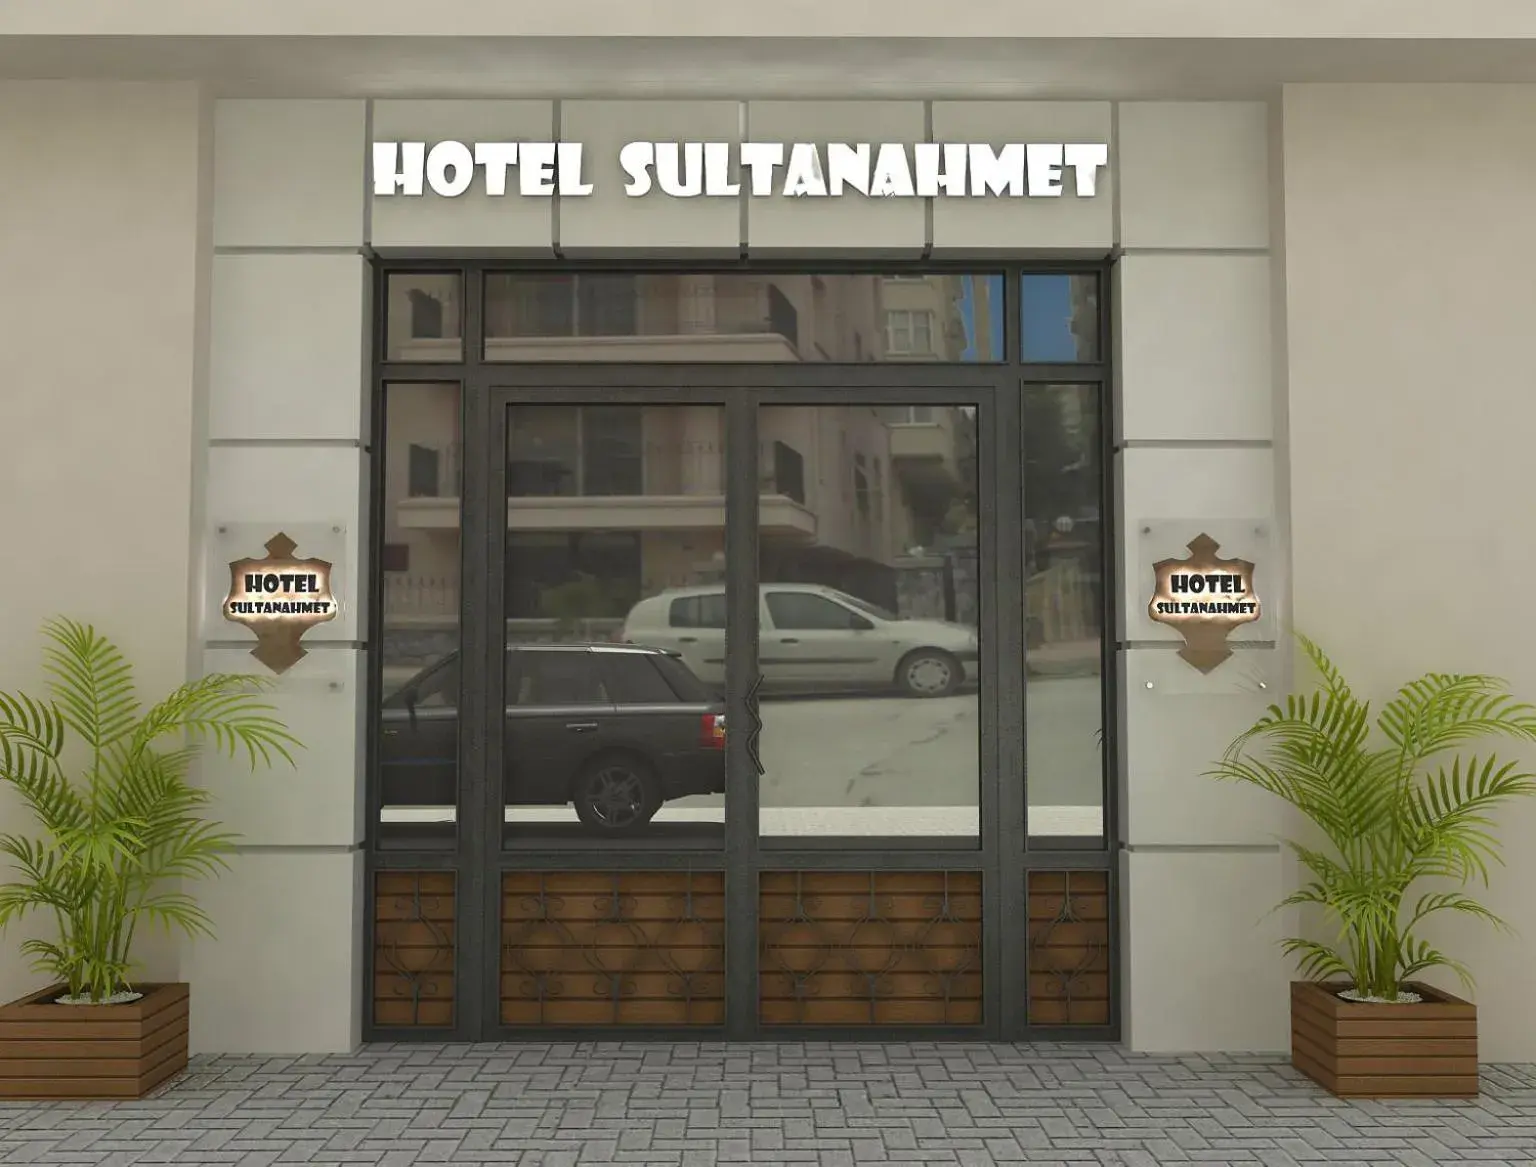 Facade/entrance in Hotel Sultanahmet